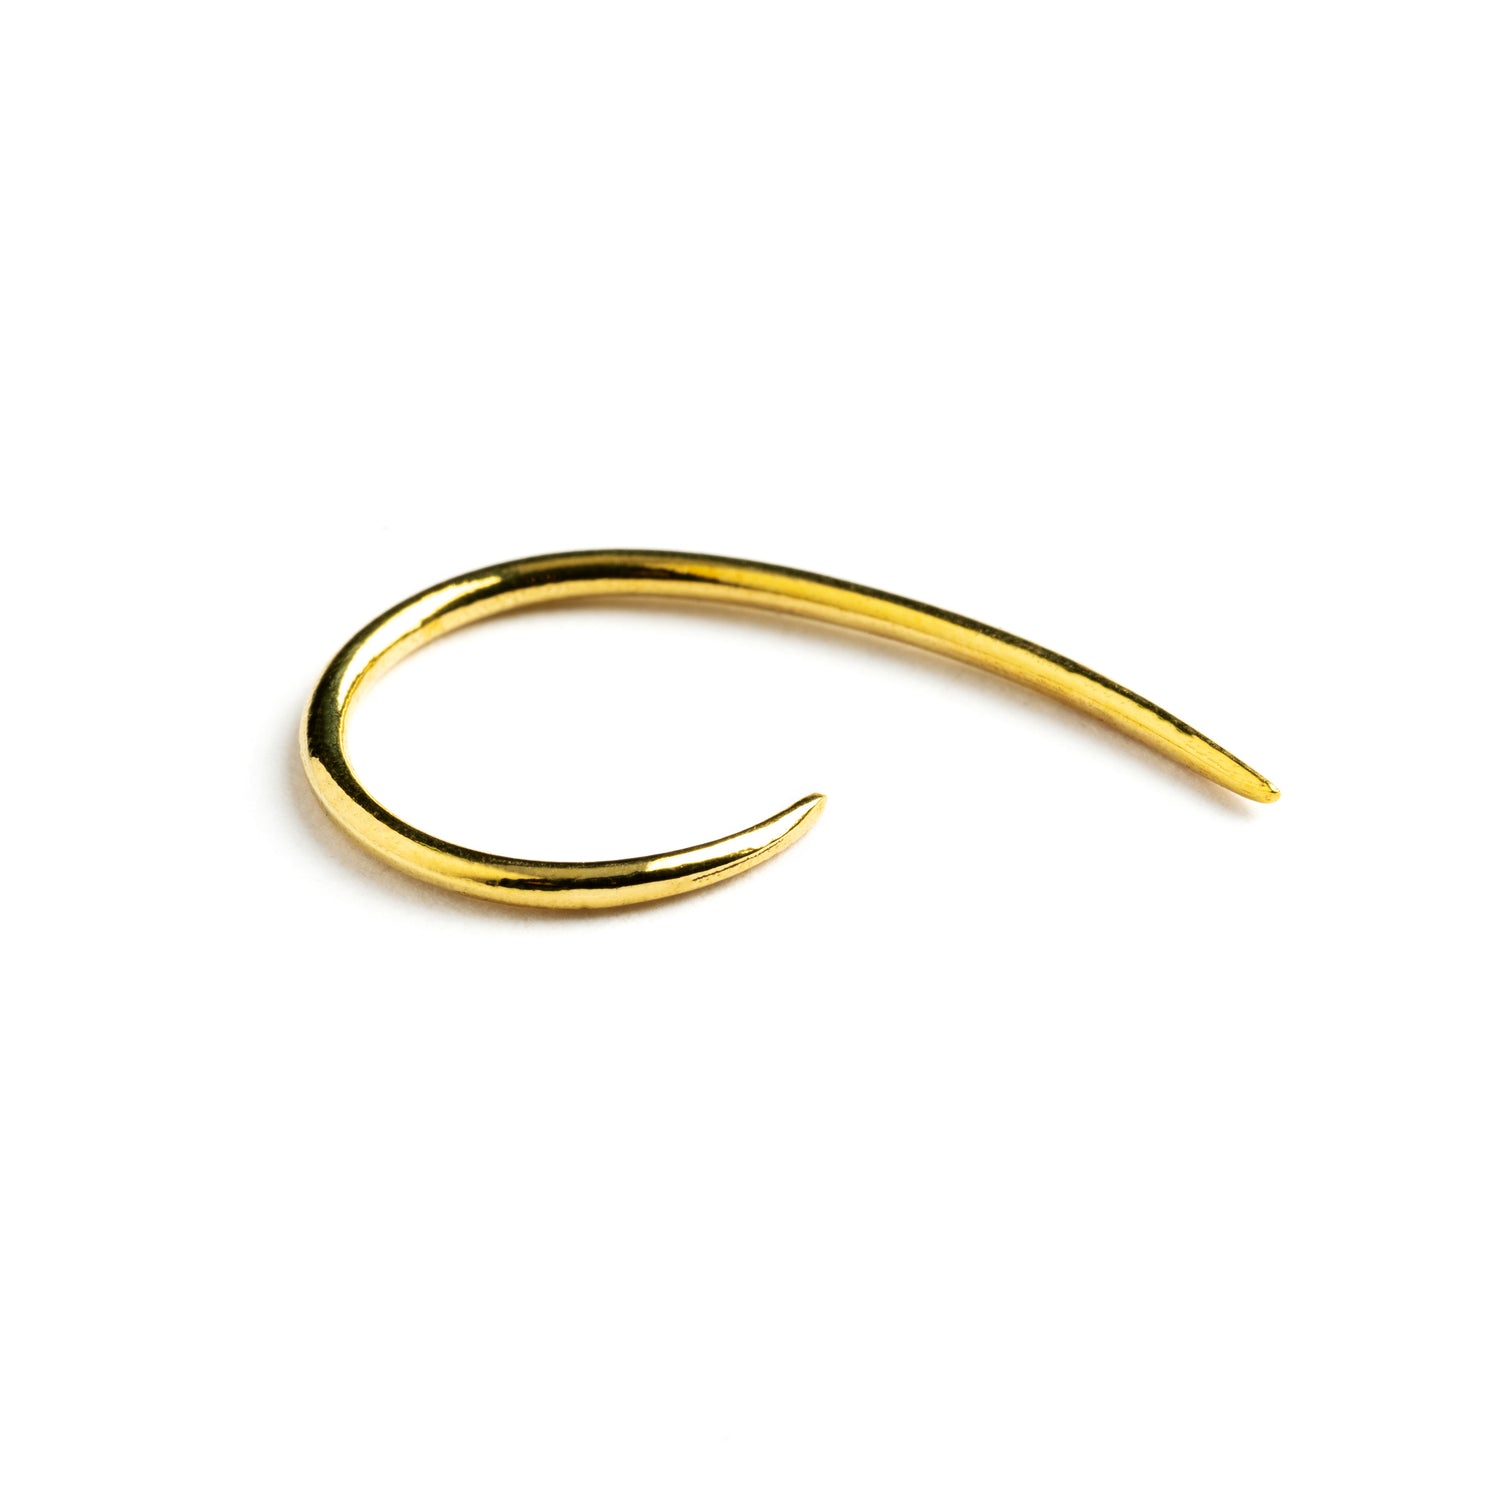 single golden brass wire hook earring right side view